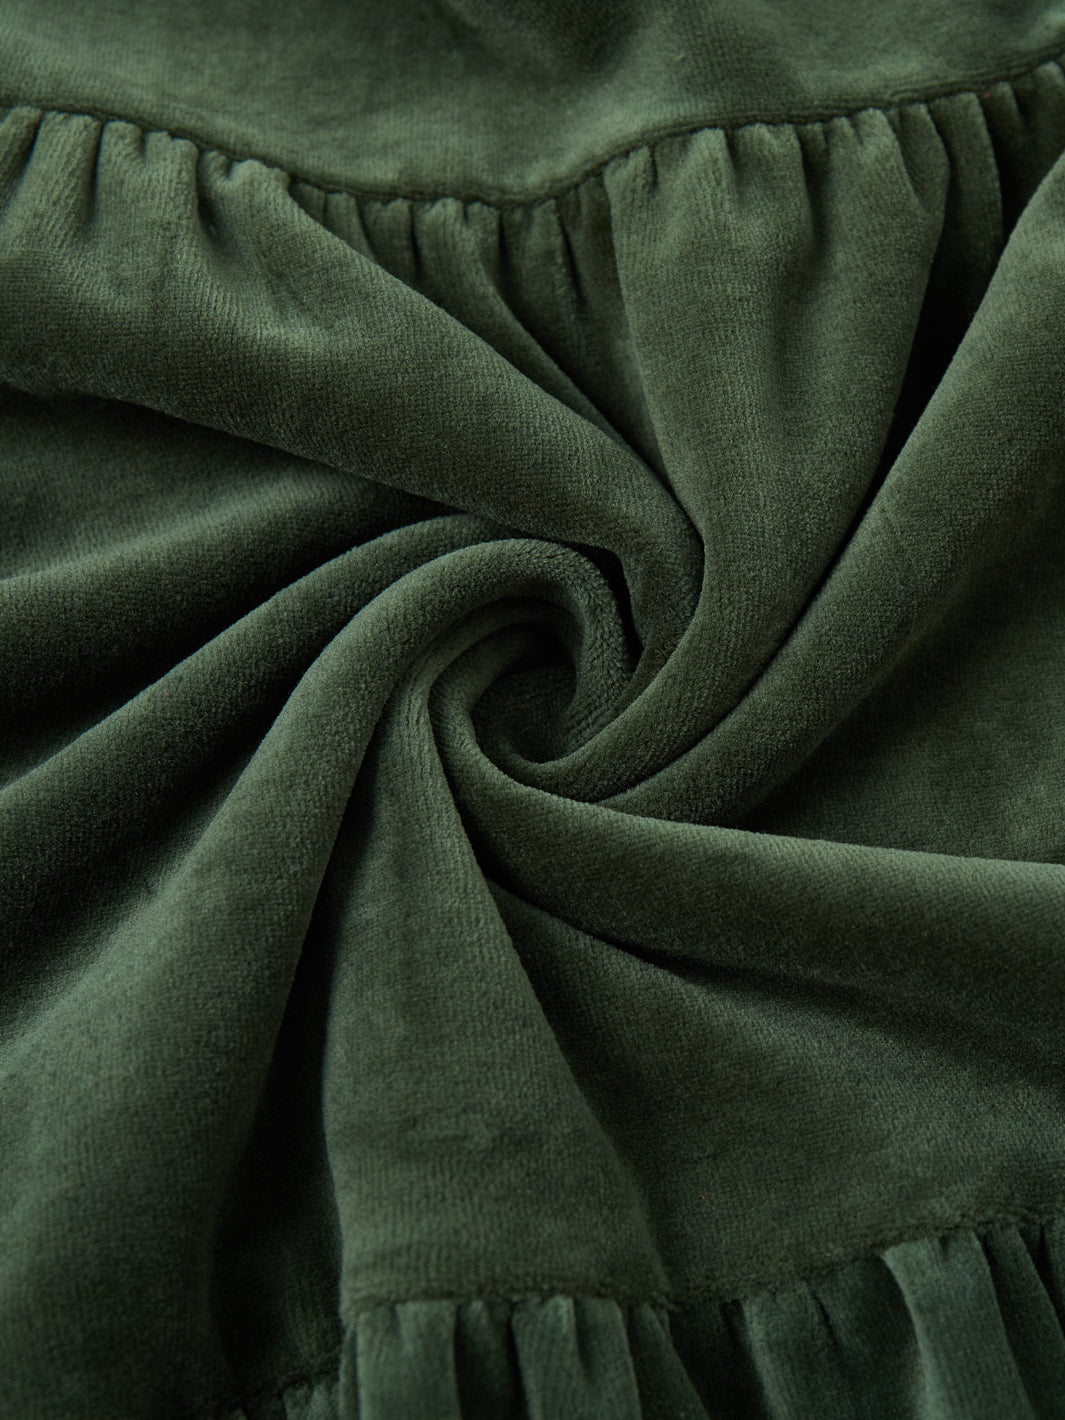 Velour Dress - Green